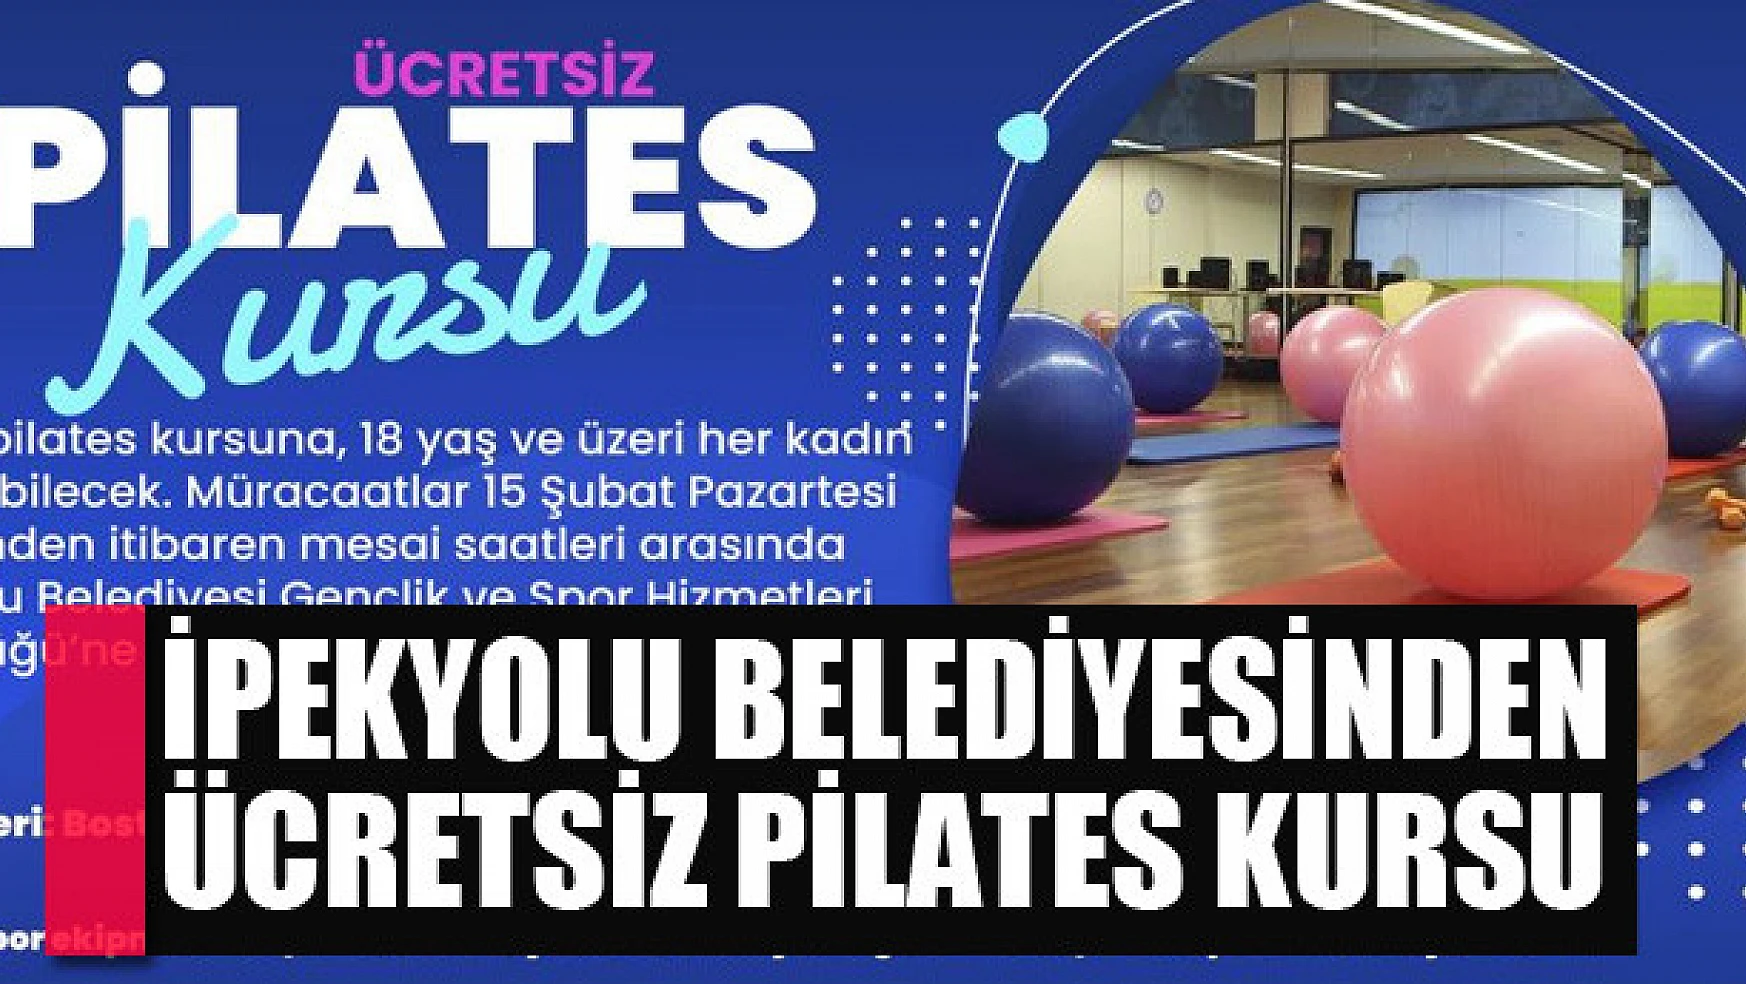 İpekyolu Belediyesinden ücretsiz pilates kursu